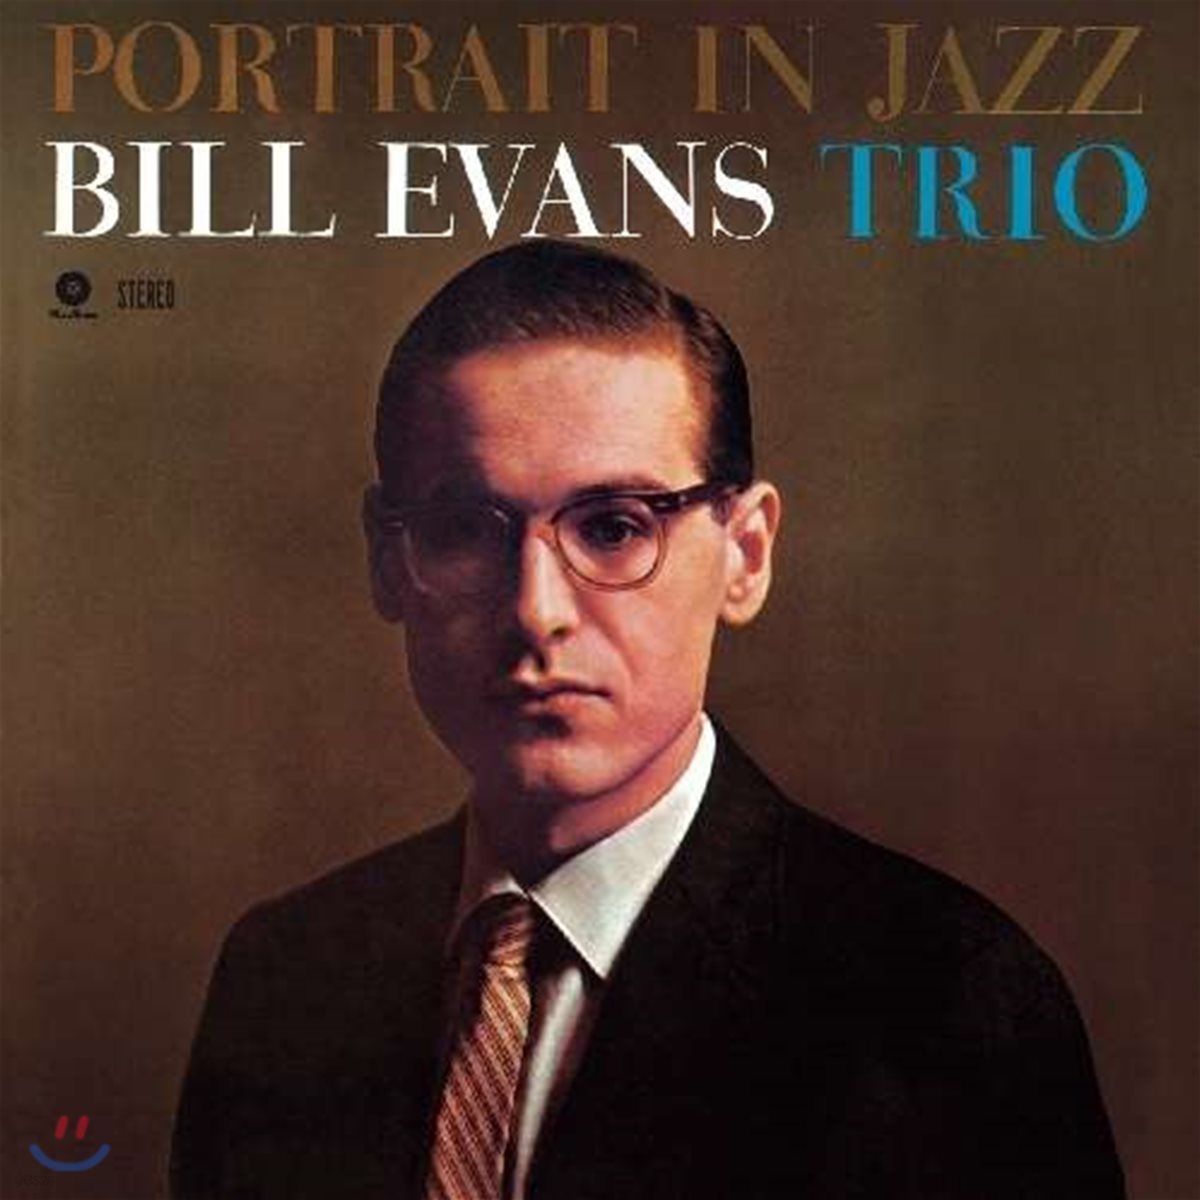 Bill Evans Trio (빌 에반스 트리오) - Portrait in Jazz [LP]